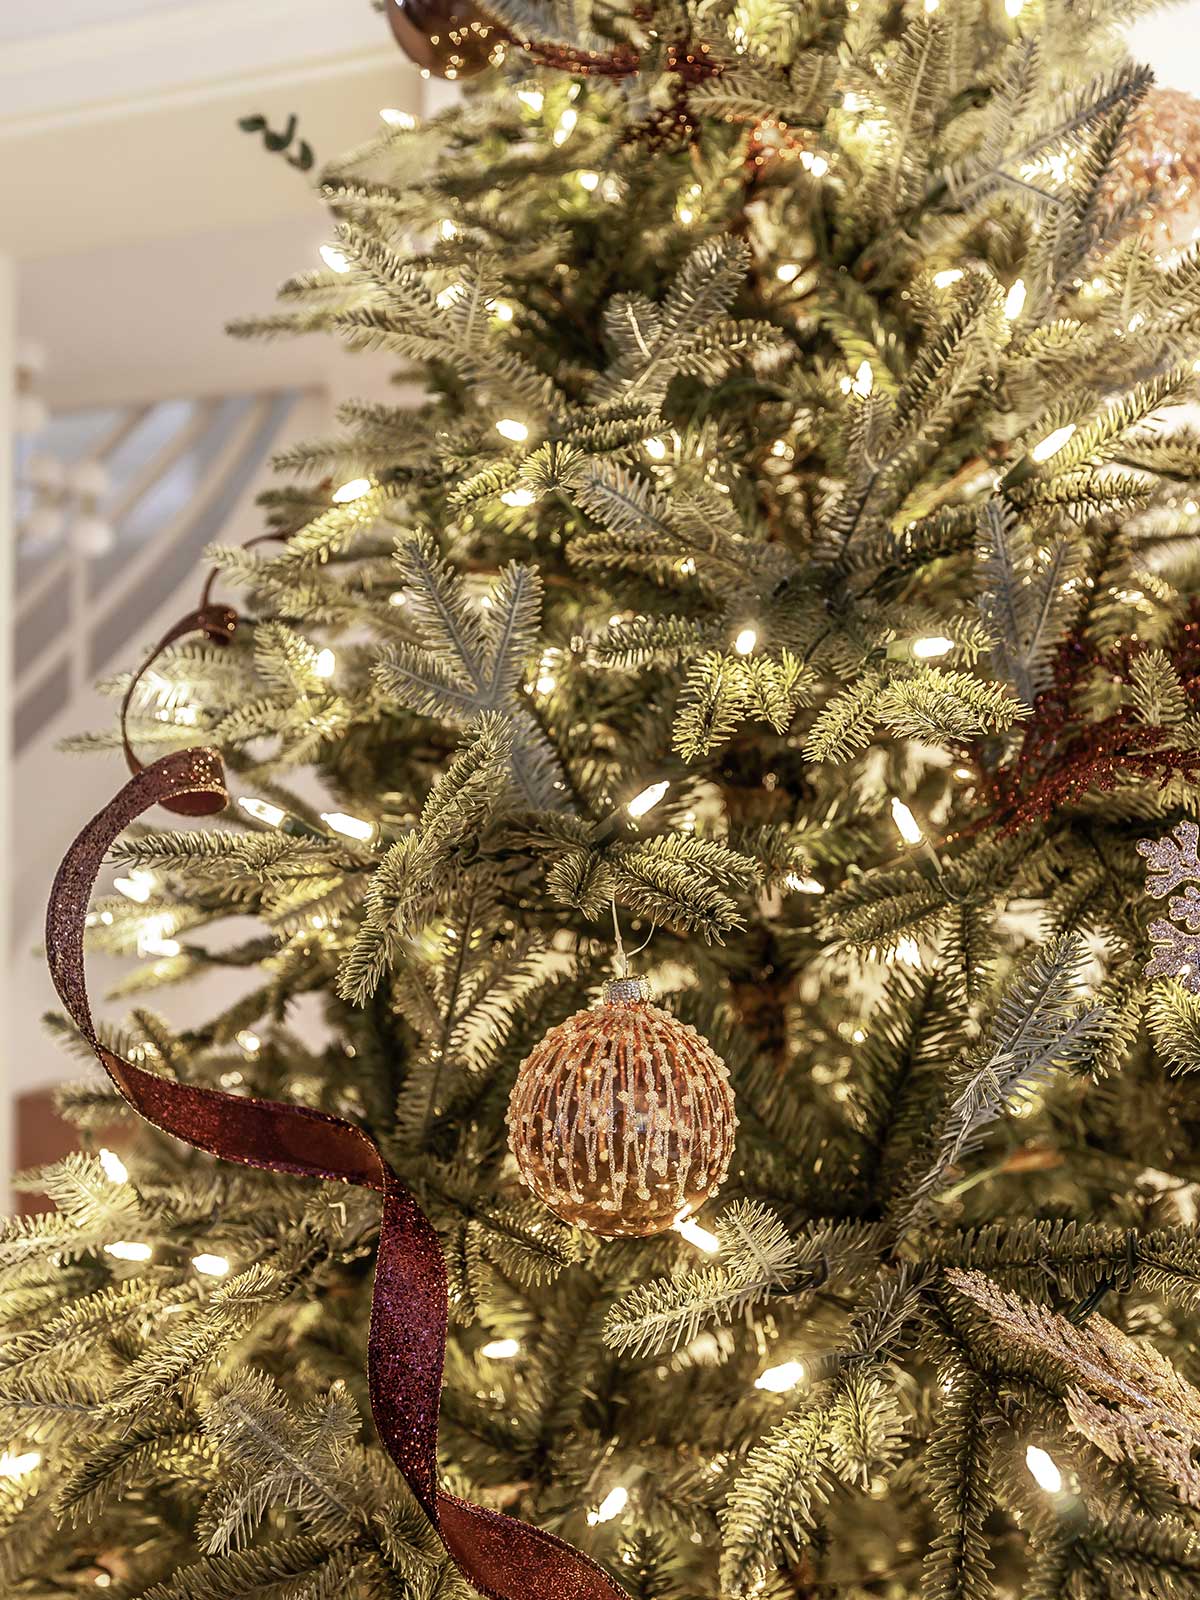 Balsam Hill Nordmann Fir Christmas Tree Review: Tree-mendous fun